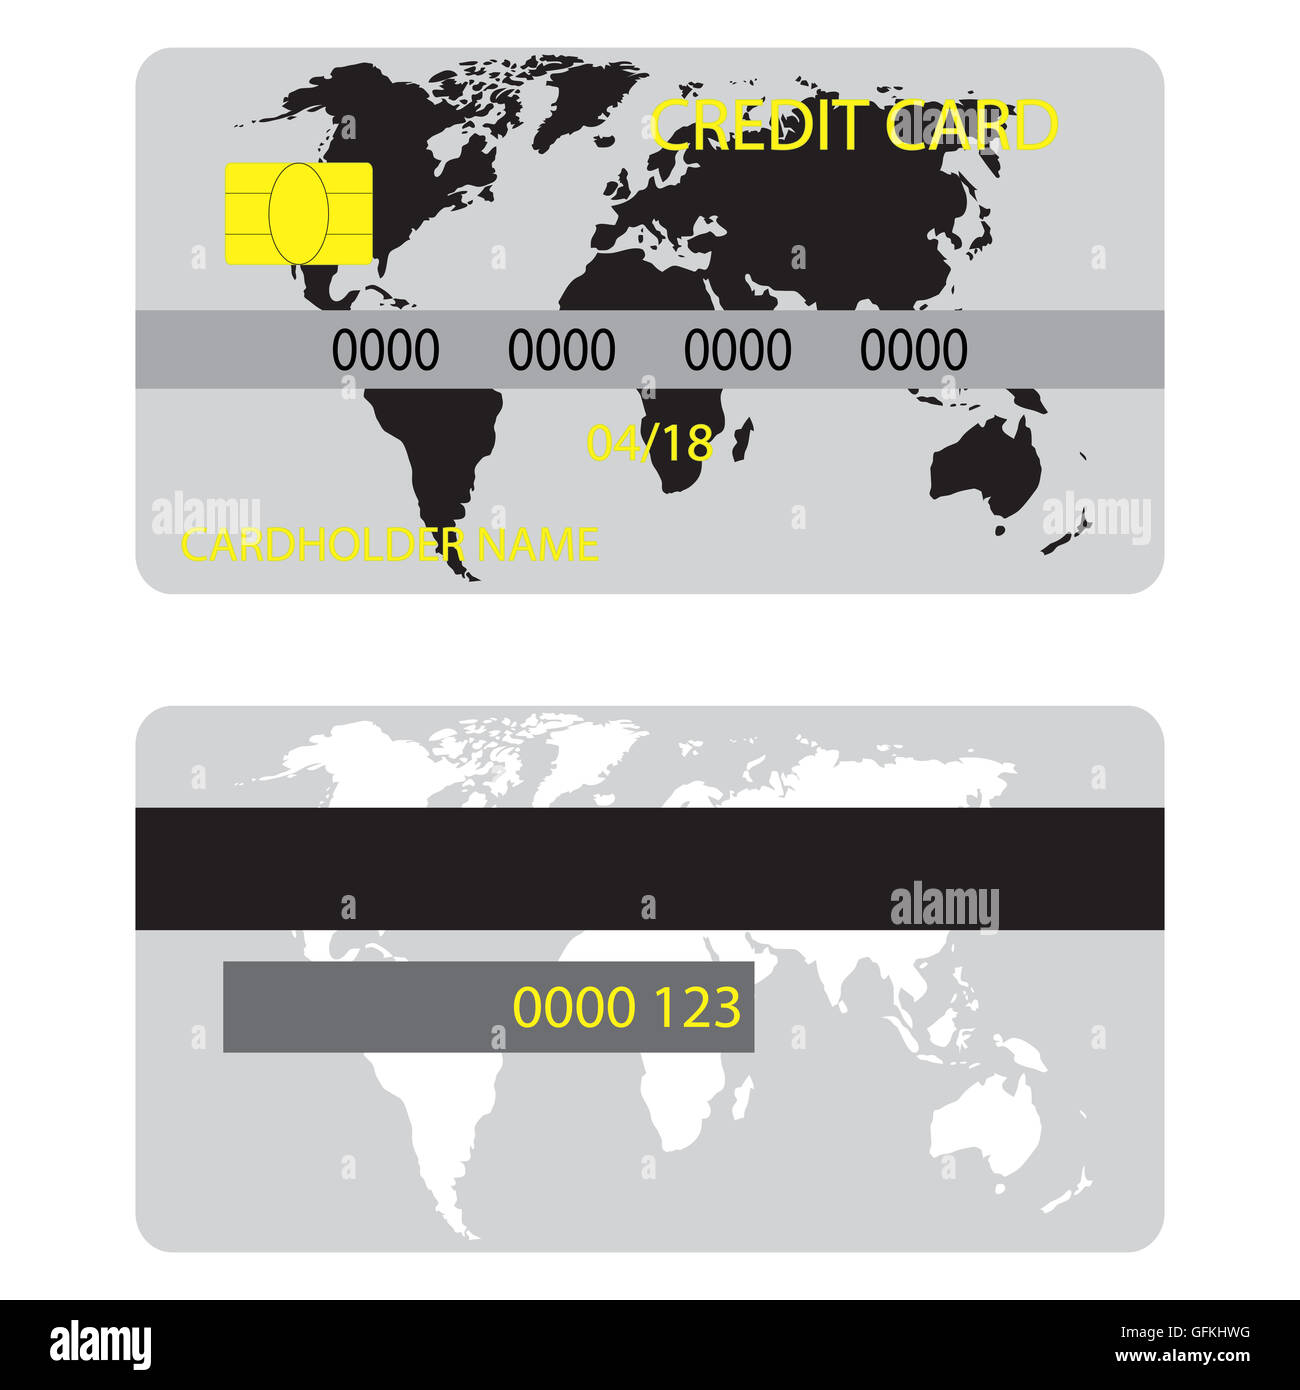 Kreditkarte mit Silhouette Weltkarte. Kreditkarten-Ico für den Einkauf mit Geld, Vektor-illustration Stockfoto